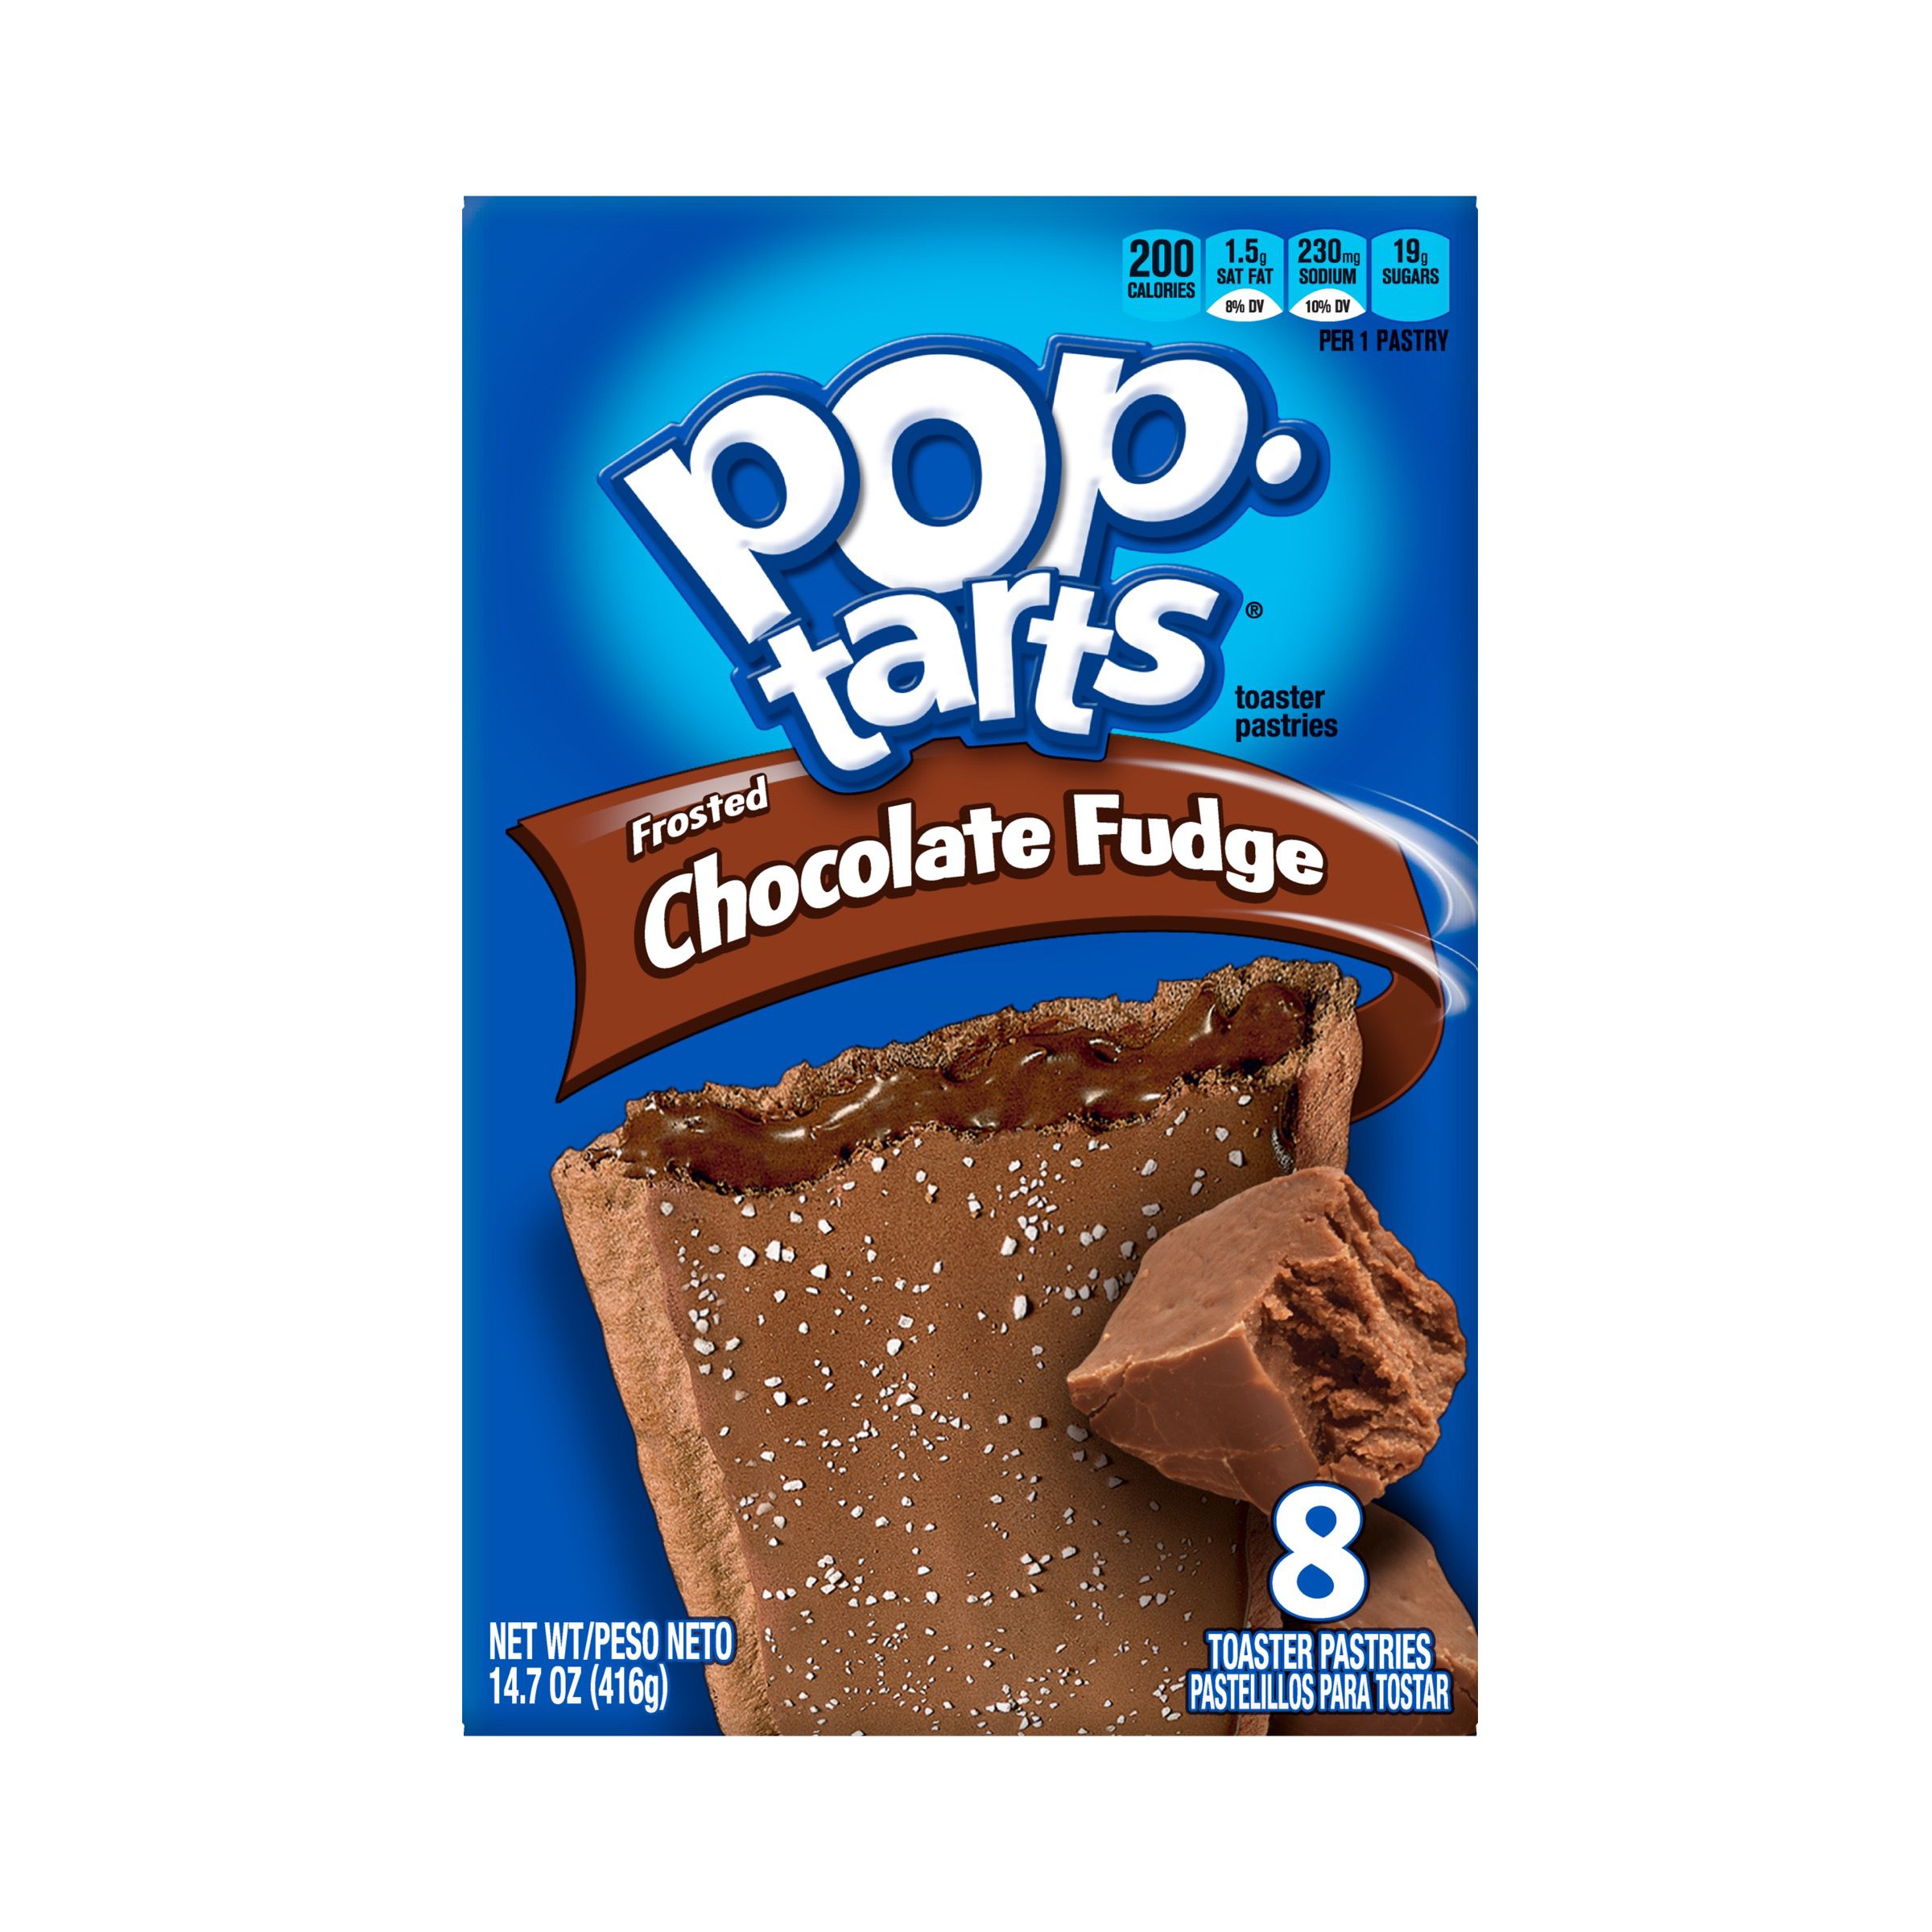 Aanvankelijk mode begin Frosted Chocolate Fudge Pop-Tarts®